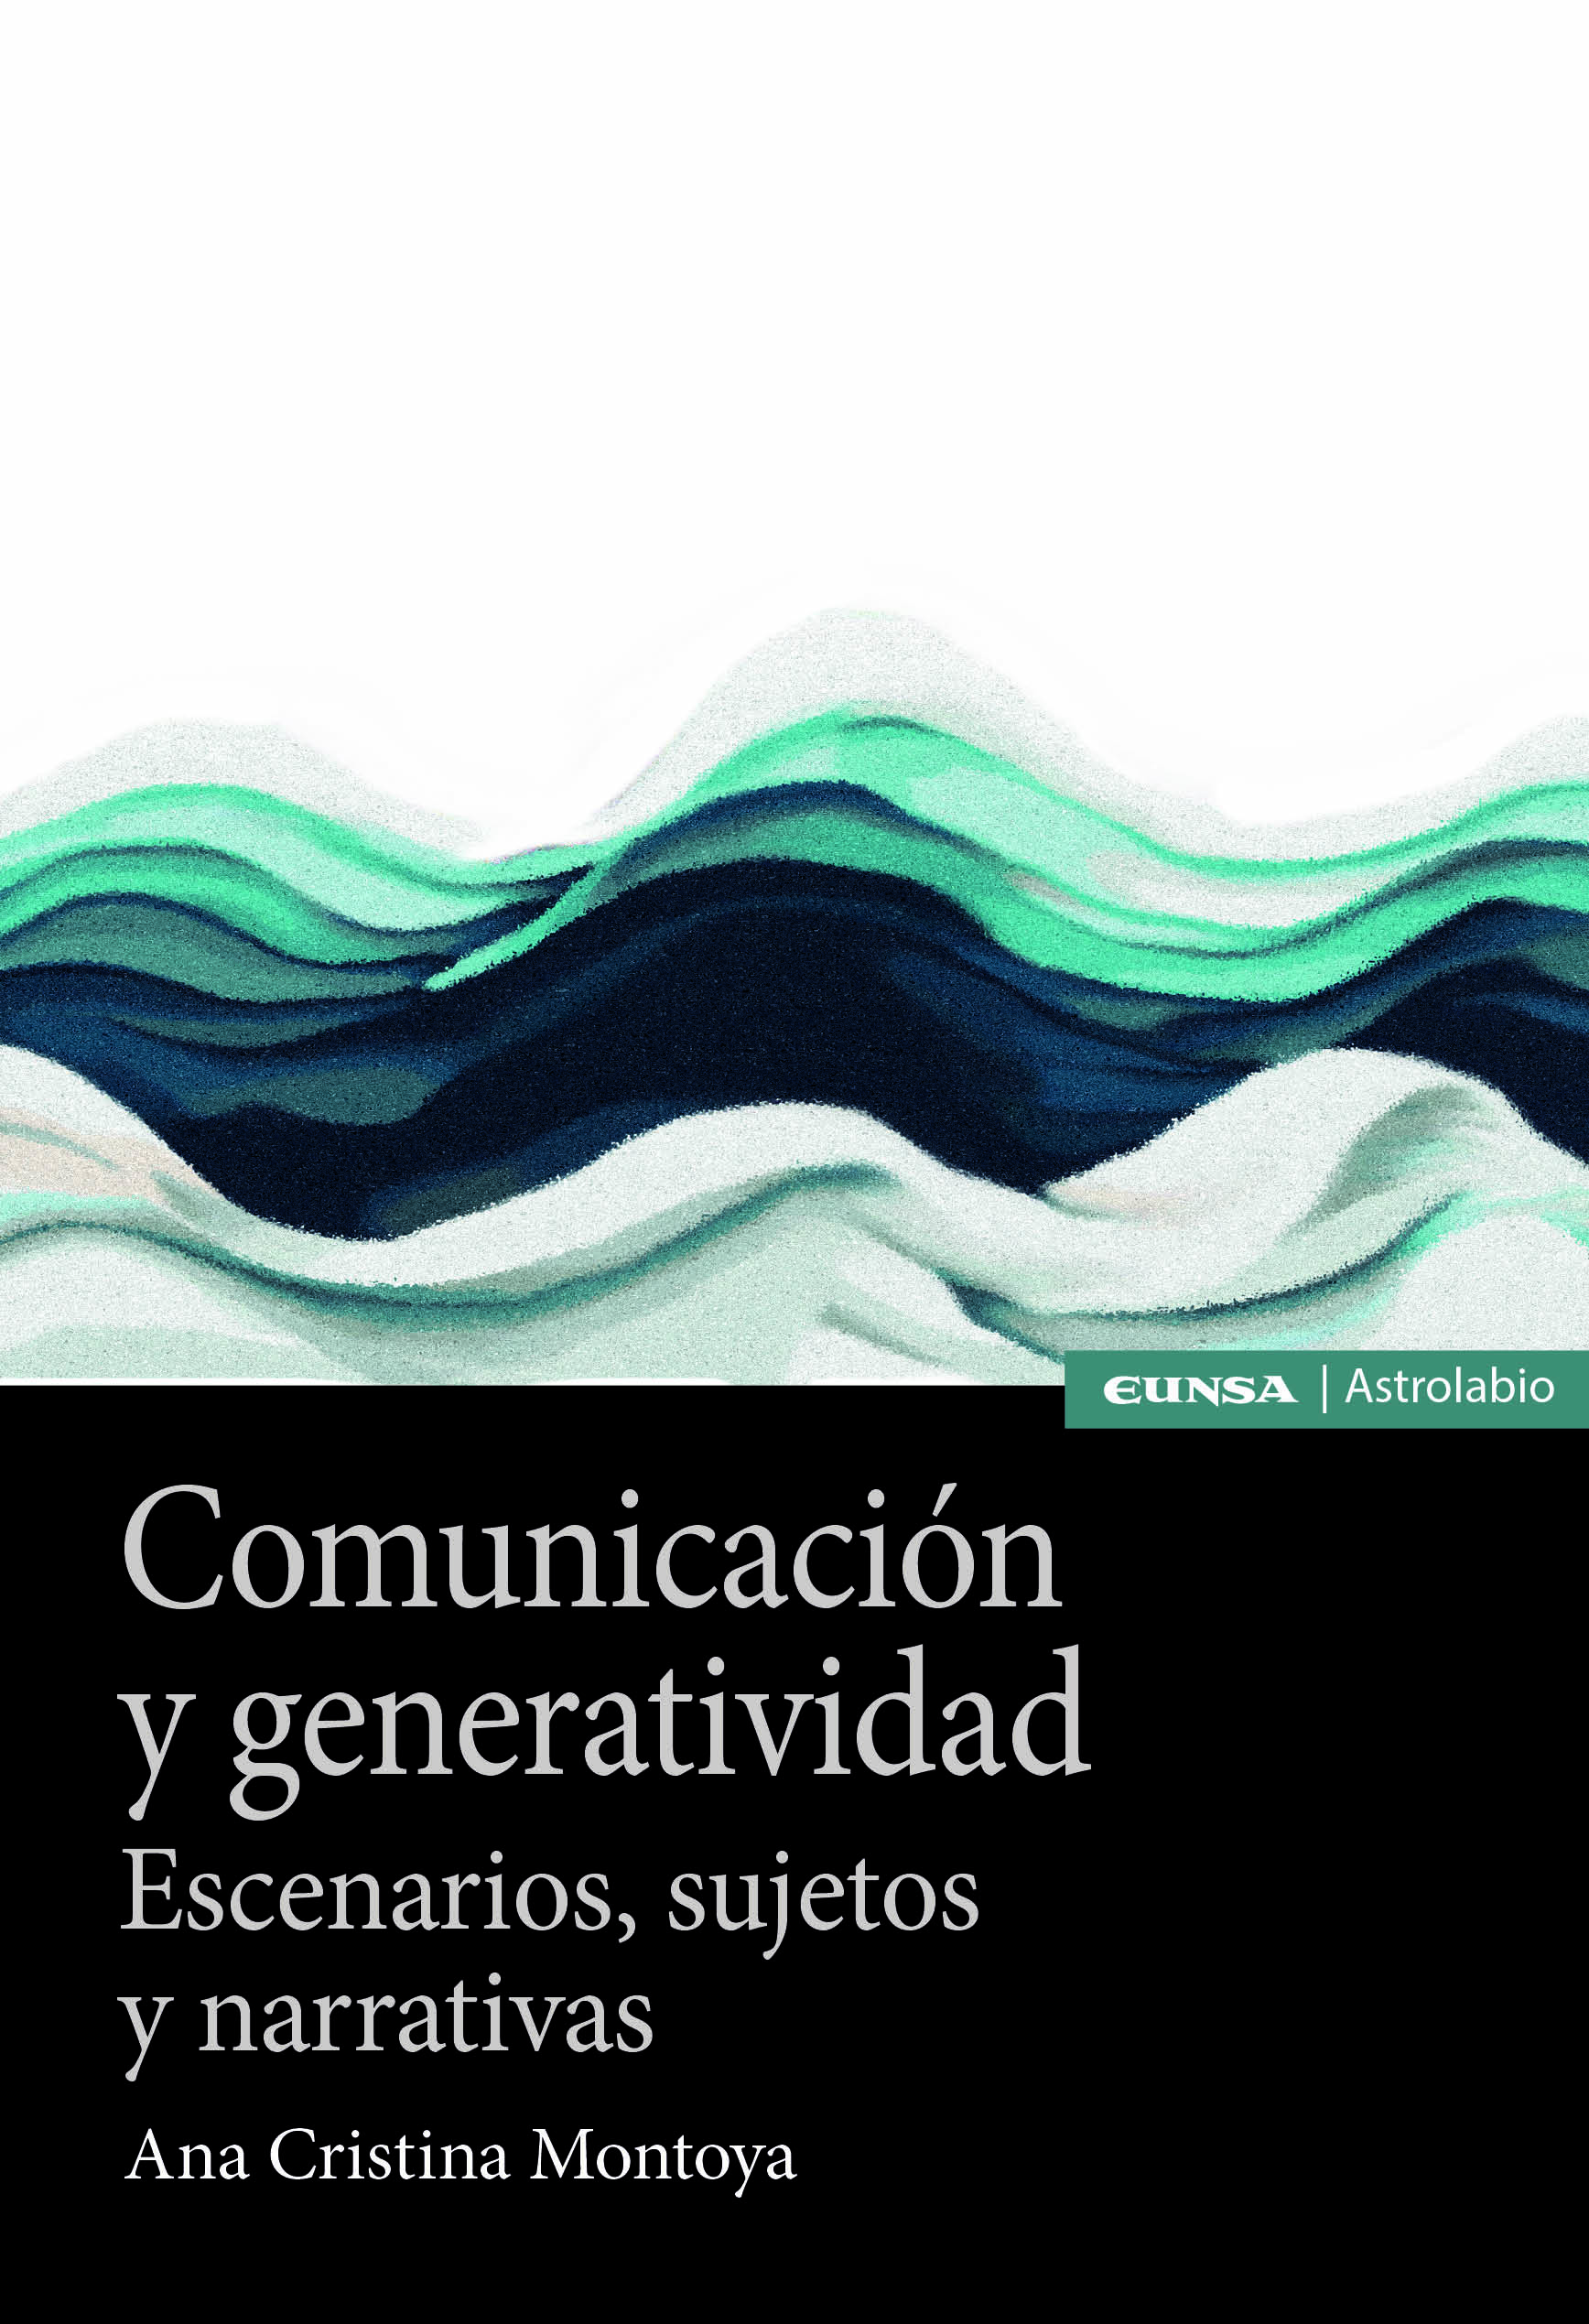 Comunicacion y generatividad «Escenarios, sujetos y narrativas»